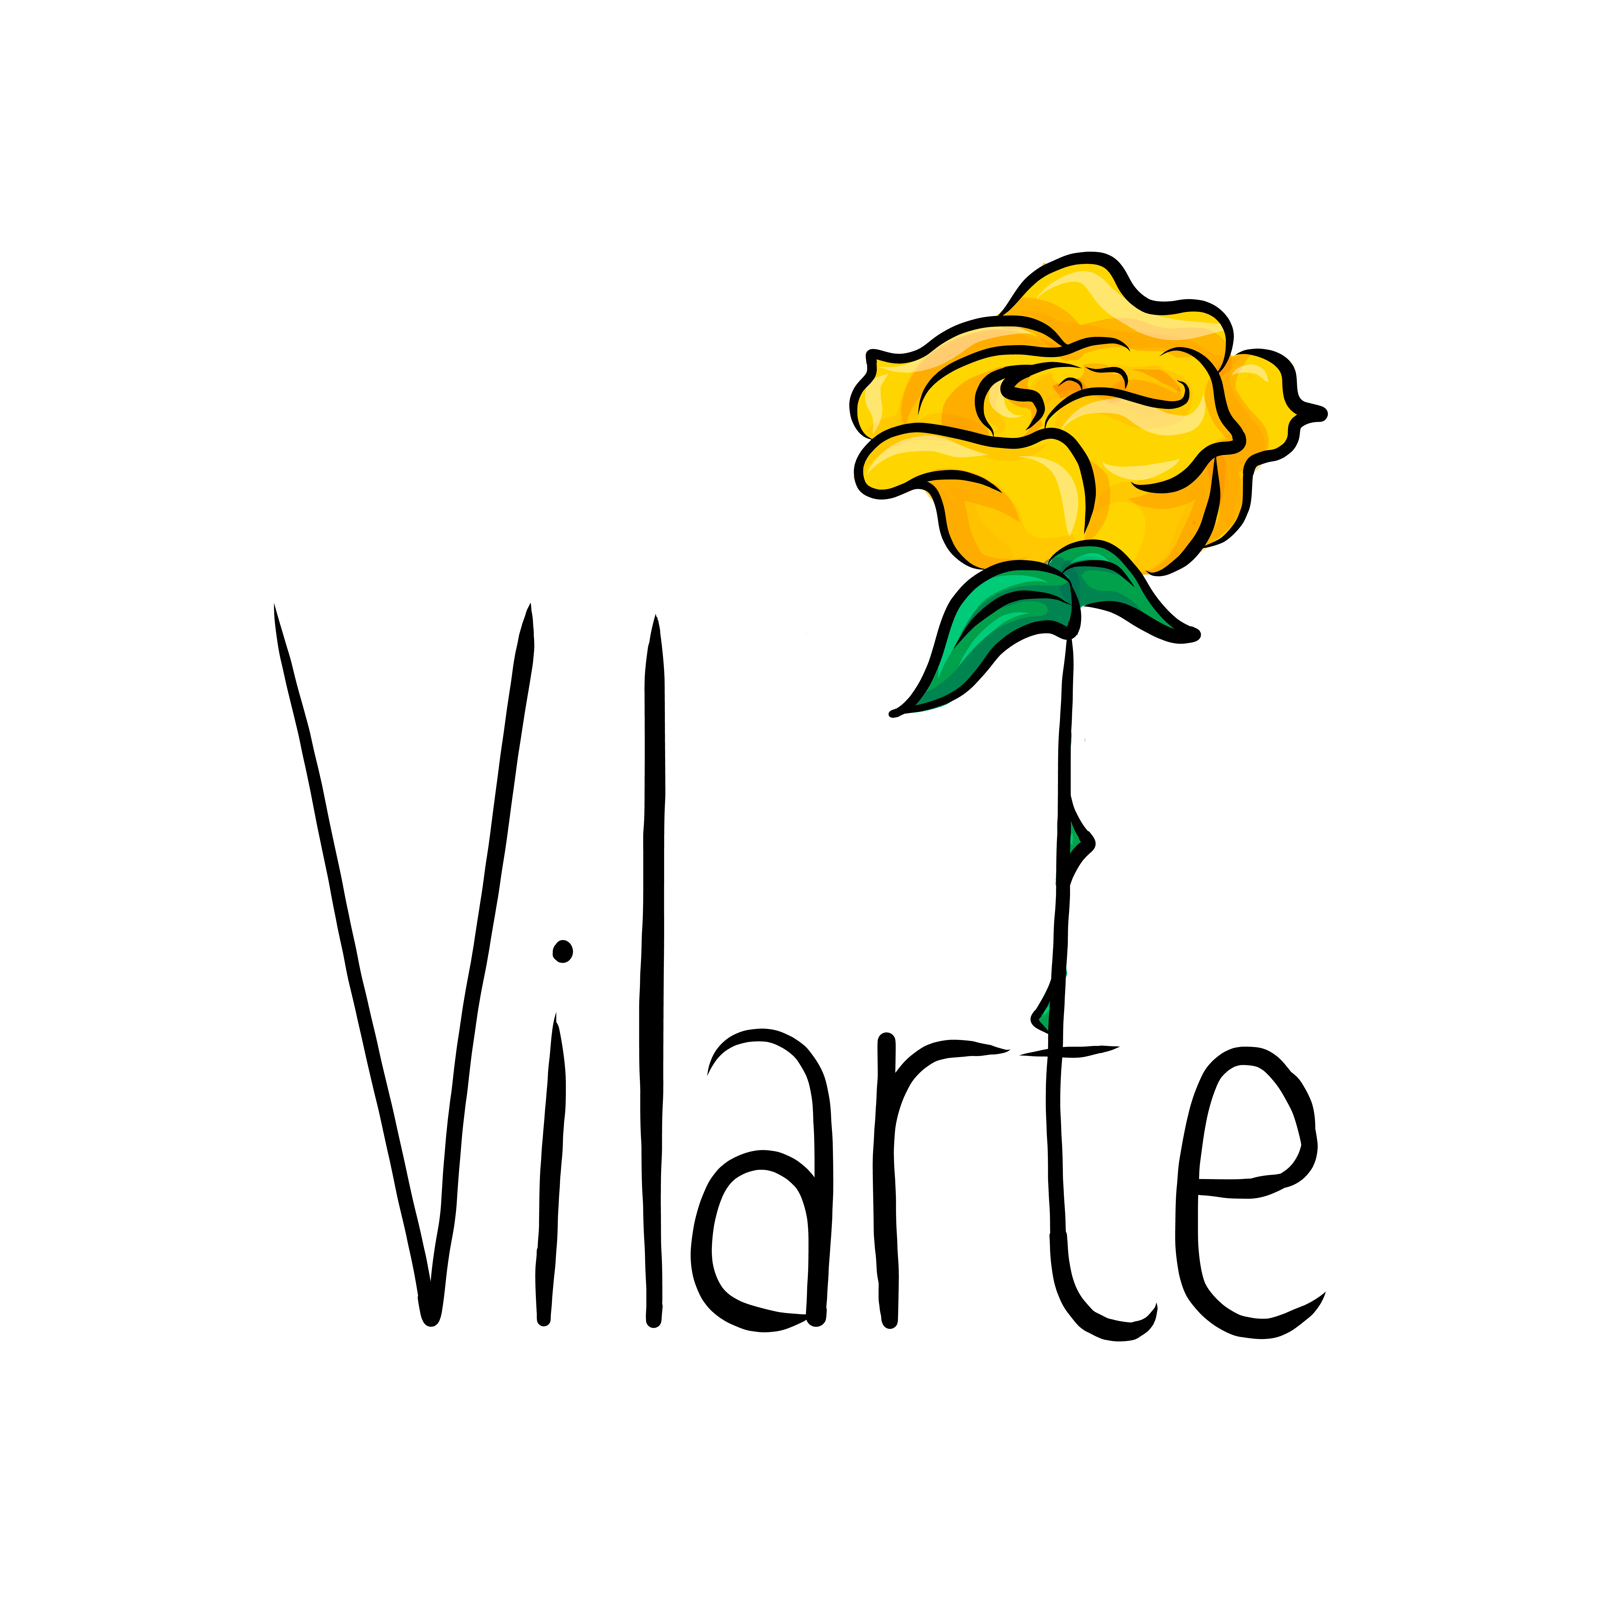 Vilarte